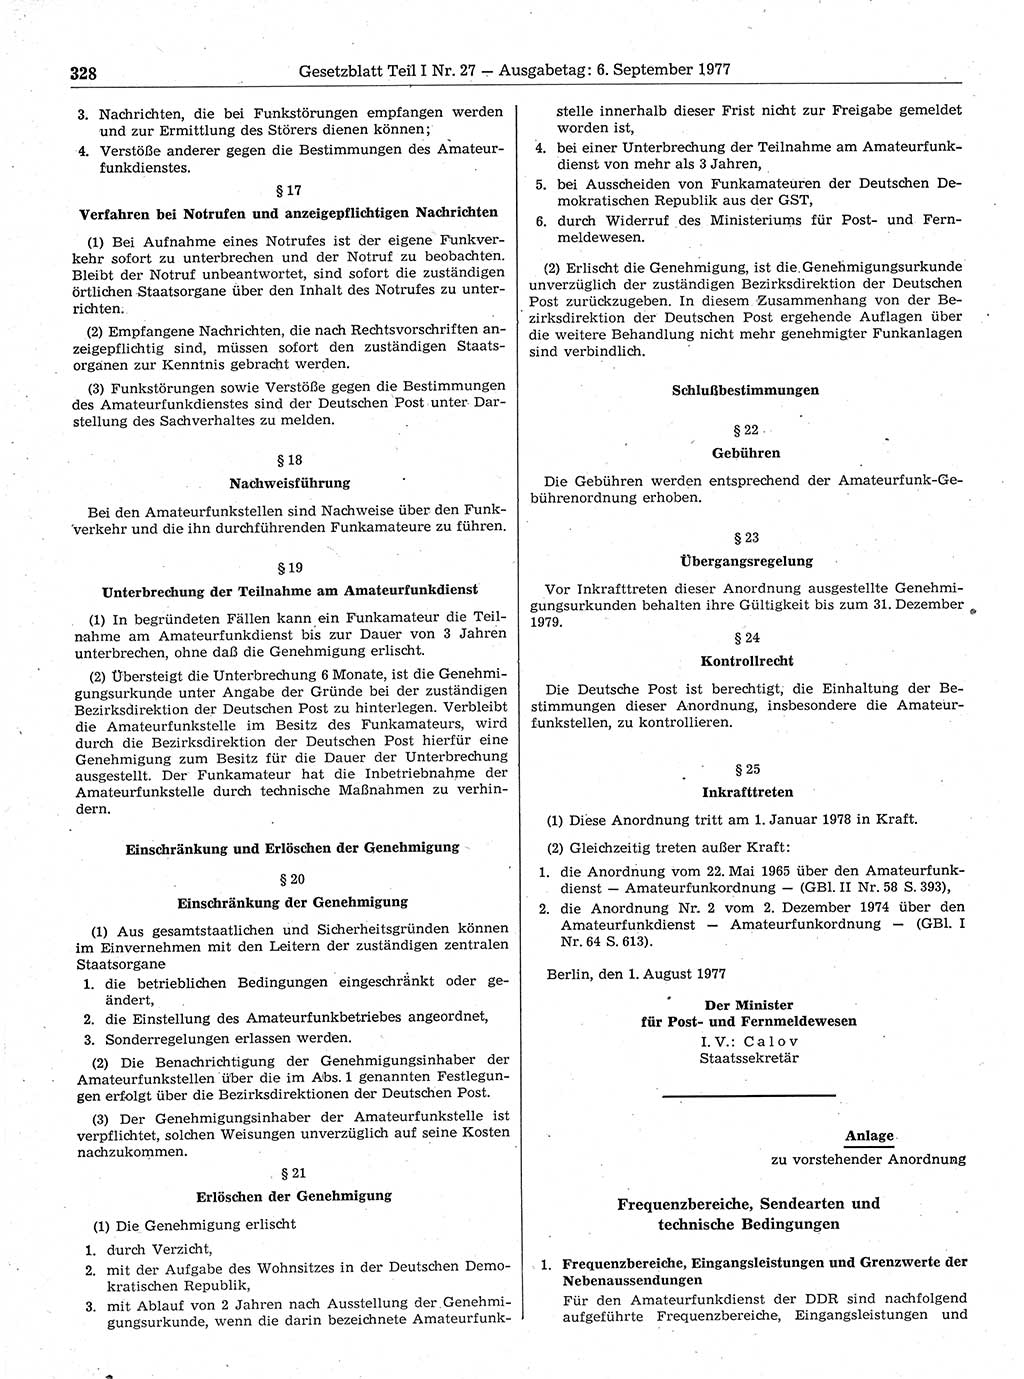 Gesetzblatt (GBl.) der Deutschen Demokratischen Republik (DDR) Teil Ⅰ 1977, Seite 328 (GBl. DDR Ⅰ 1977, S. 328)